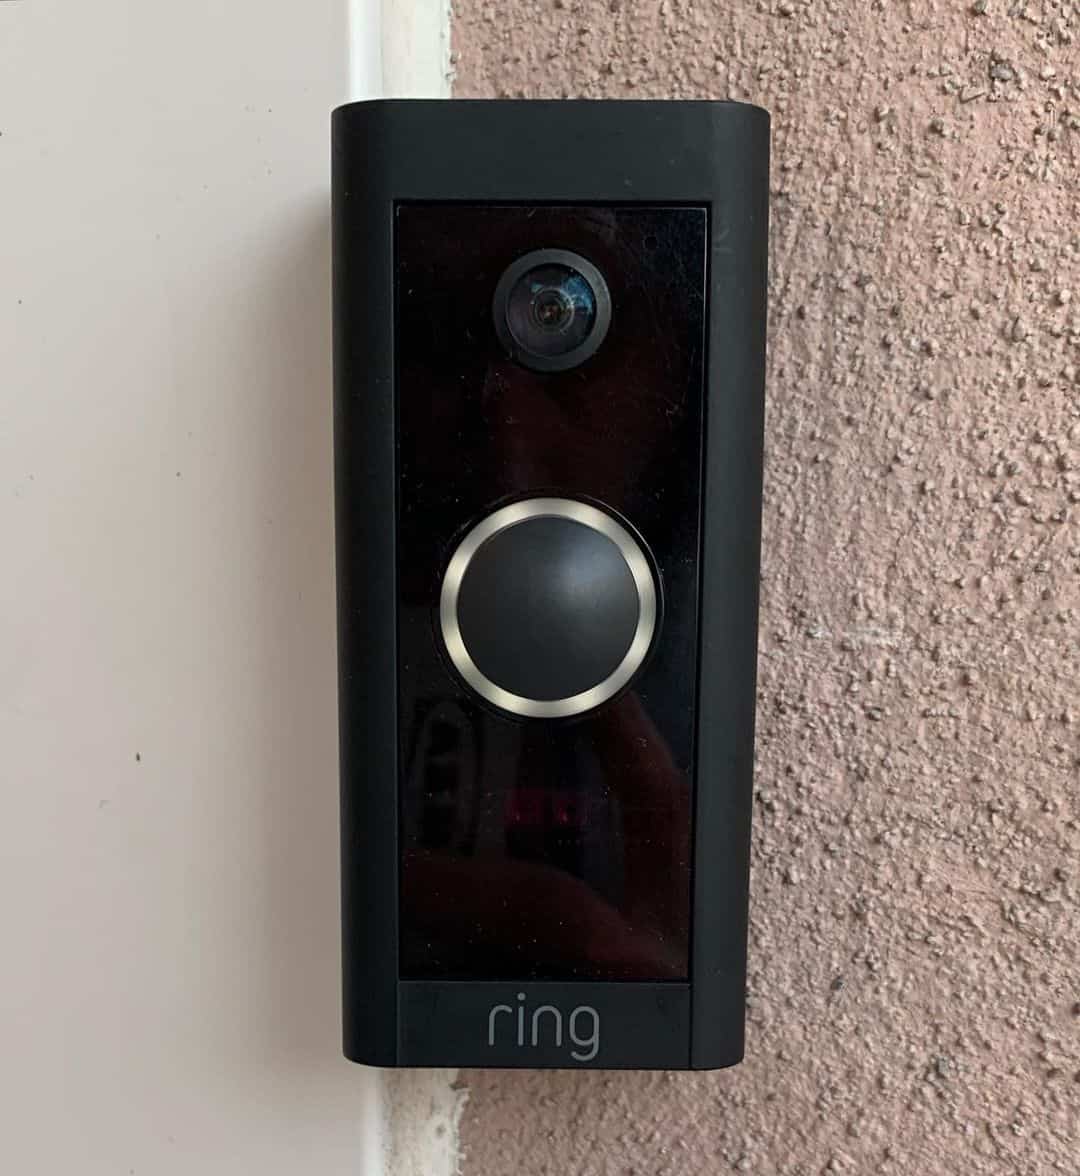 Position your doorbell